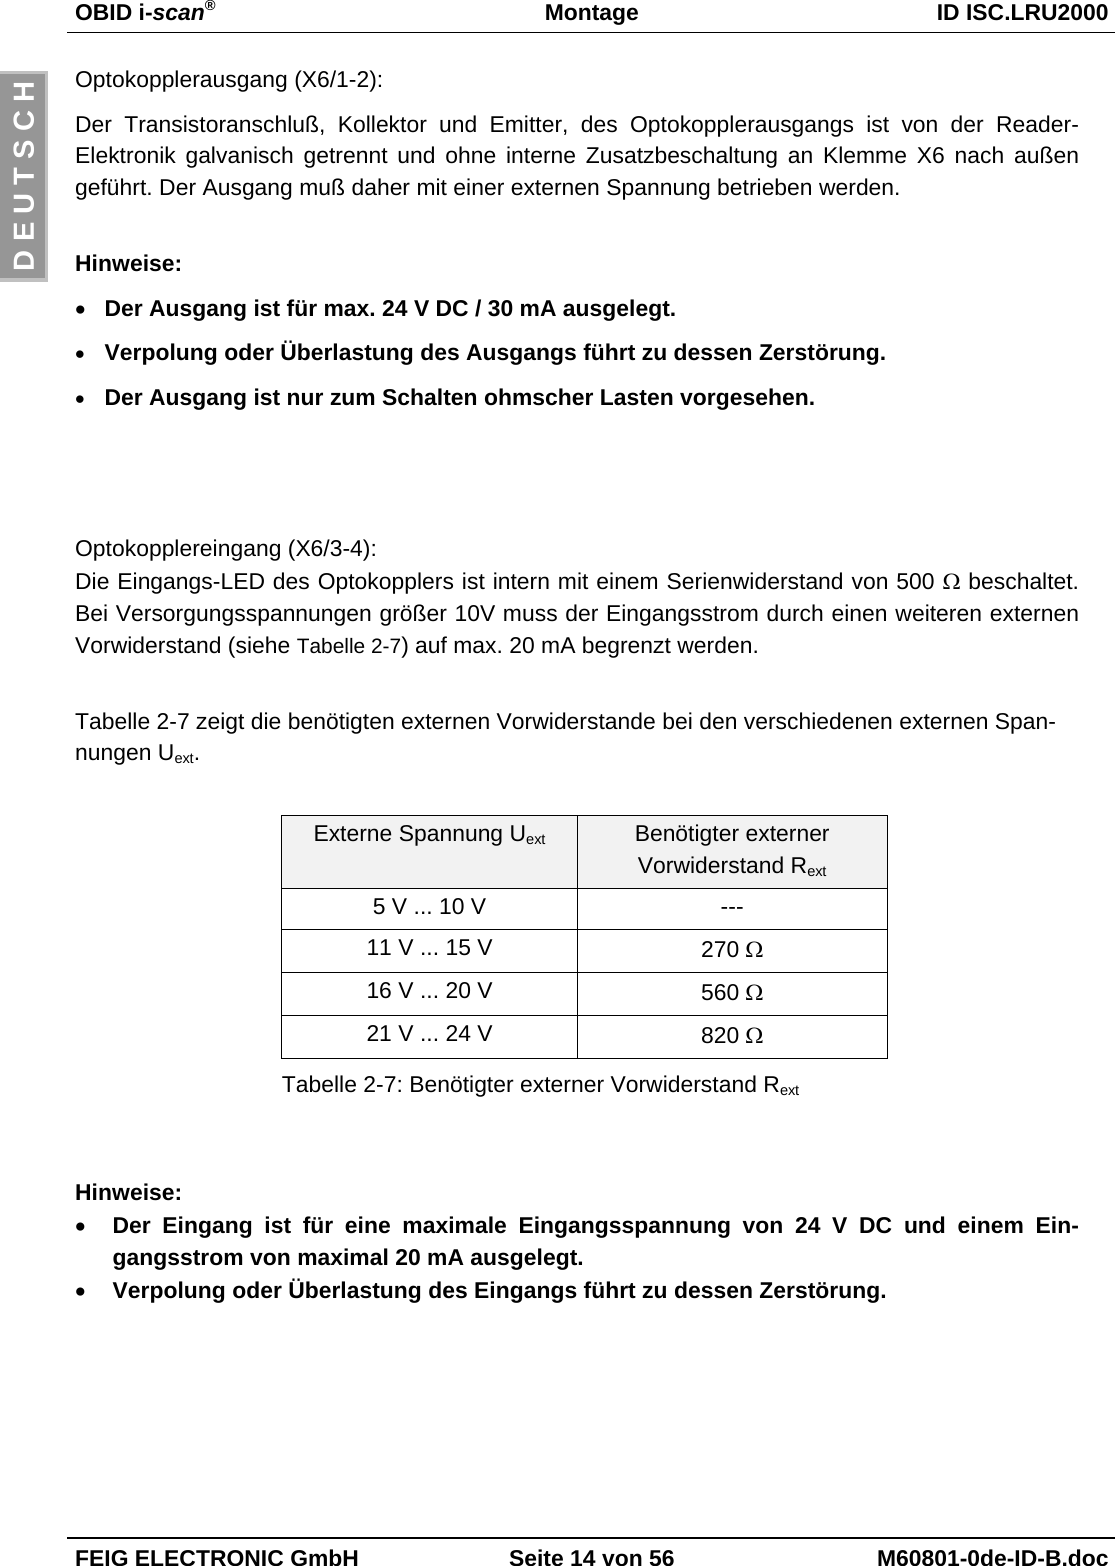 OBID i-scan®Montage ID ISC.LRU2000FEIG ELECTRONIC GmbH Seite 14 von 56 M60801-0de-ID-B.docD E U T S C HOptokopplerausgang (X6/1-2):Der Transistoranschluß, Kollektor und Emitter, des Optokopplerausgangs ist von der Reader-Elektronik galvanisch getrennt und ohne interne Zusatzbeschaltung an Klemme X6 nach außengeführt. Der Ausgang muß daher mit einer externen Spannung betrieben werden.Hinweise:• Der Ausgang ist für max. 24 V DC / 30 mA ausgelegt.• Verpolung oder Überlastung des Ausgangs führt zu dessen Zerstörung.• Der Ausgang ist nur zum Schalten ohmscher Lasten vorgesehen.Optokopplereingang (X6/3-4):Die Eingangs-LED des Optokopplers ist intern mit einem Serienwiderstand von 500 Ω beschaltet.Bei Versorgungsspannungen größer 10V muss der Eingangsstrom durch einen weiteren externenVorwiderstand (siehe Tabelle 2-7) auf max. 20 mA begrenzt werden.Tabelle 2-7 zeigt die benötigten externen Vorwiderstande bei den verschiedenen externen Span-nungen Uext.Externe Spannung Uext Benötigter externerVorwiderstand Rext5 V ... 10 V ---11 V ... 15 V 270 Ω16 V ... 20 V 560 Ω21 V ... 24 V 820 ΩTabelle 2-7: Benötigter externer Vorwiderstand RextHinweise:• Der Eingang ist für eine maximale Eingangsspannung von 24 V DC und einem Ein-gangsstrom von maximal 20 mA ausgelegt.• Verpolung oder Überlastung des Eingangs führt zu dessen Zerstörung.